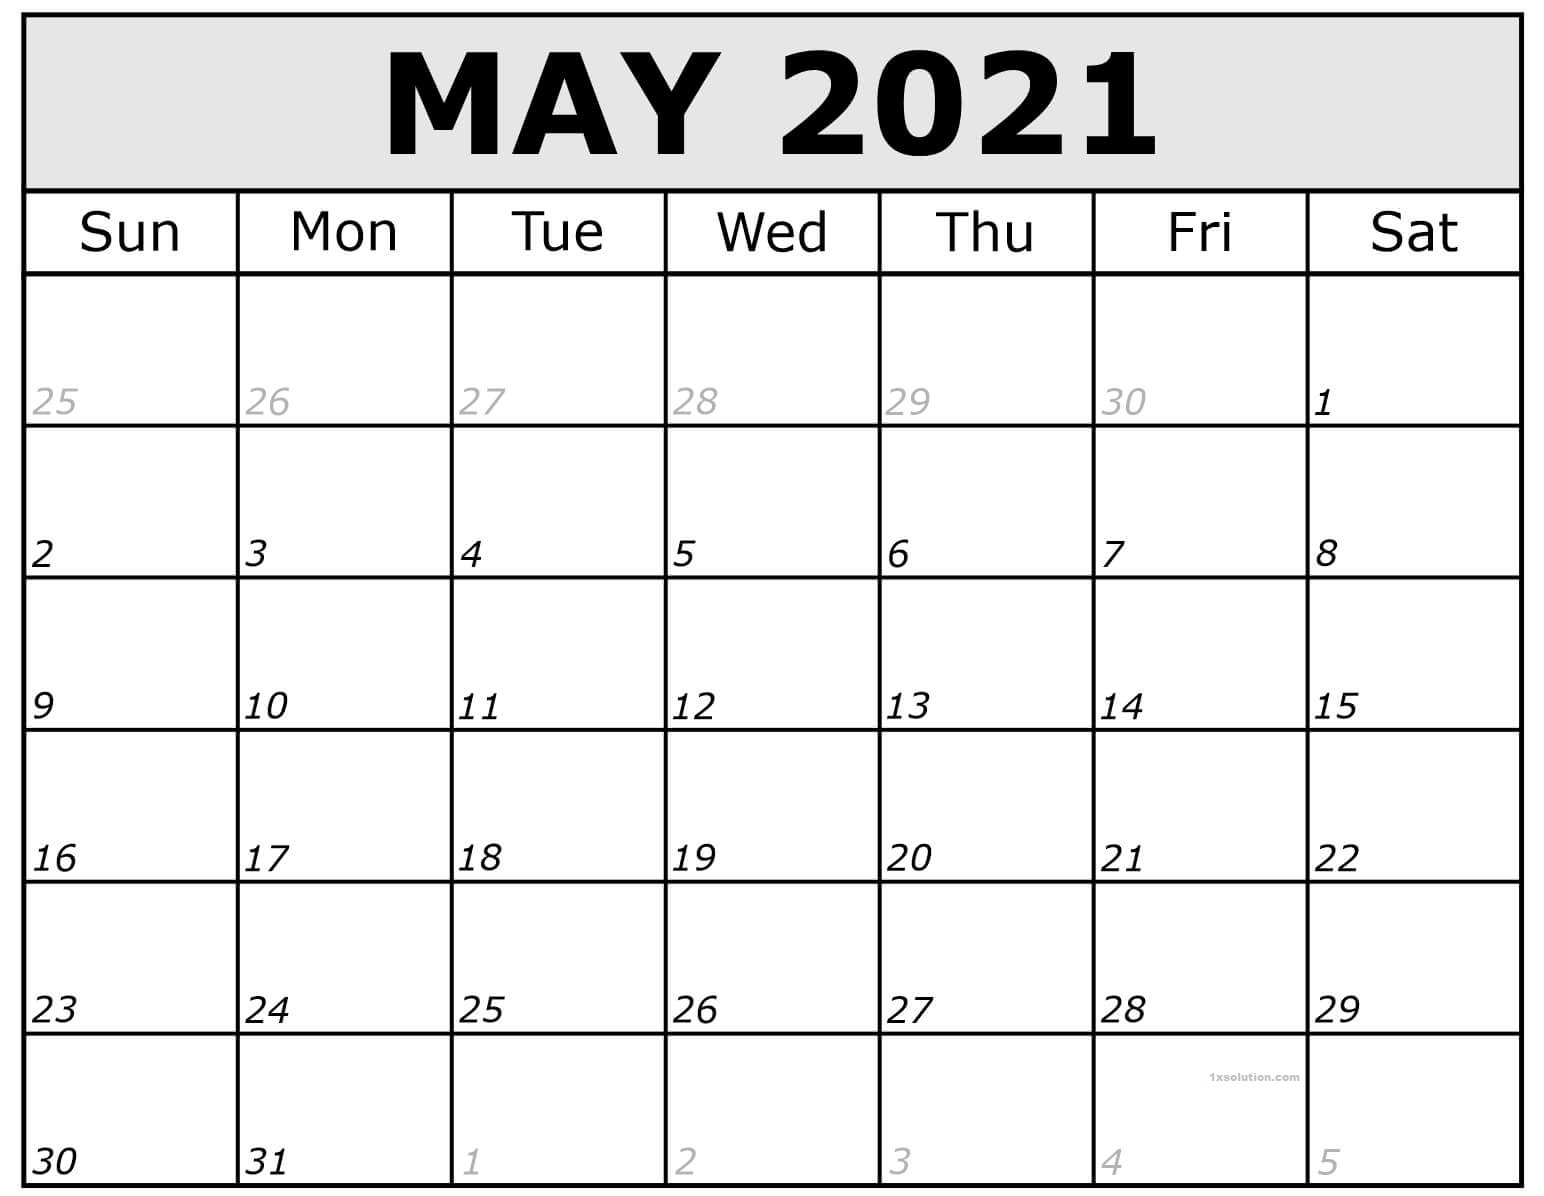 May 2021 Calendar Blank New Design | Calendar Show Calendar For June 2021